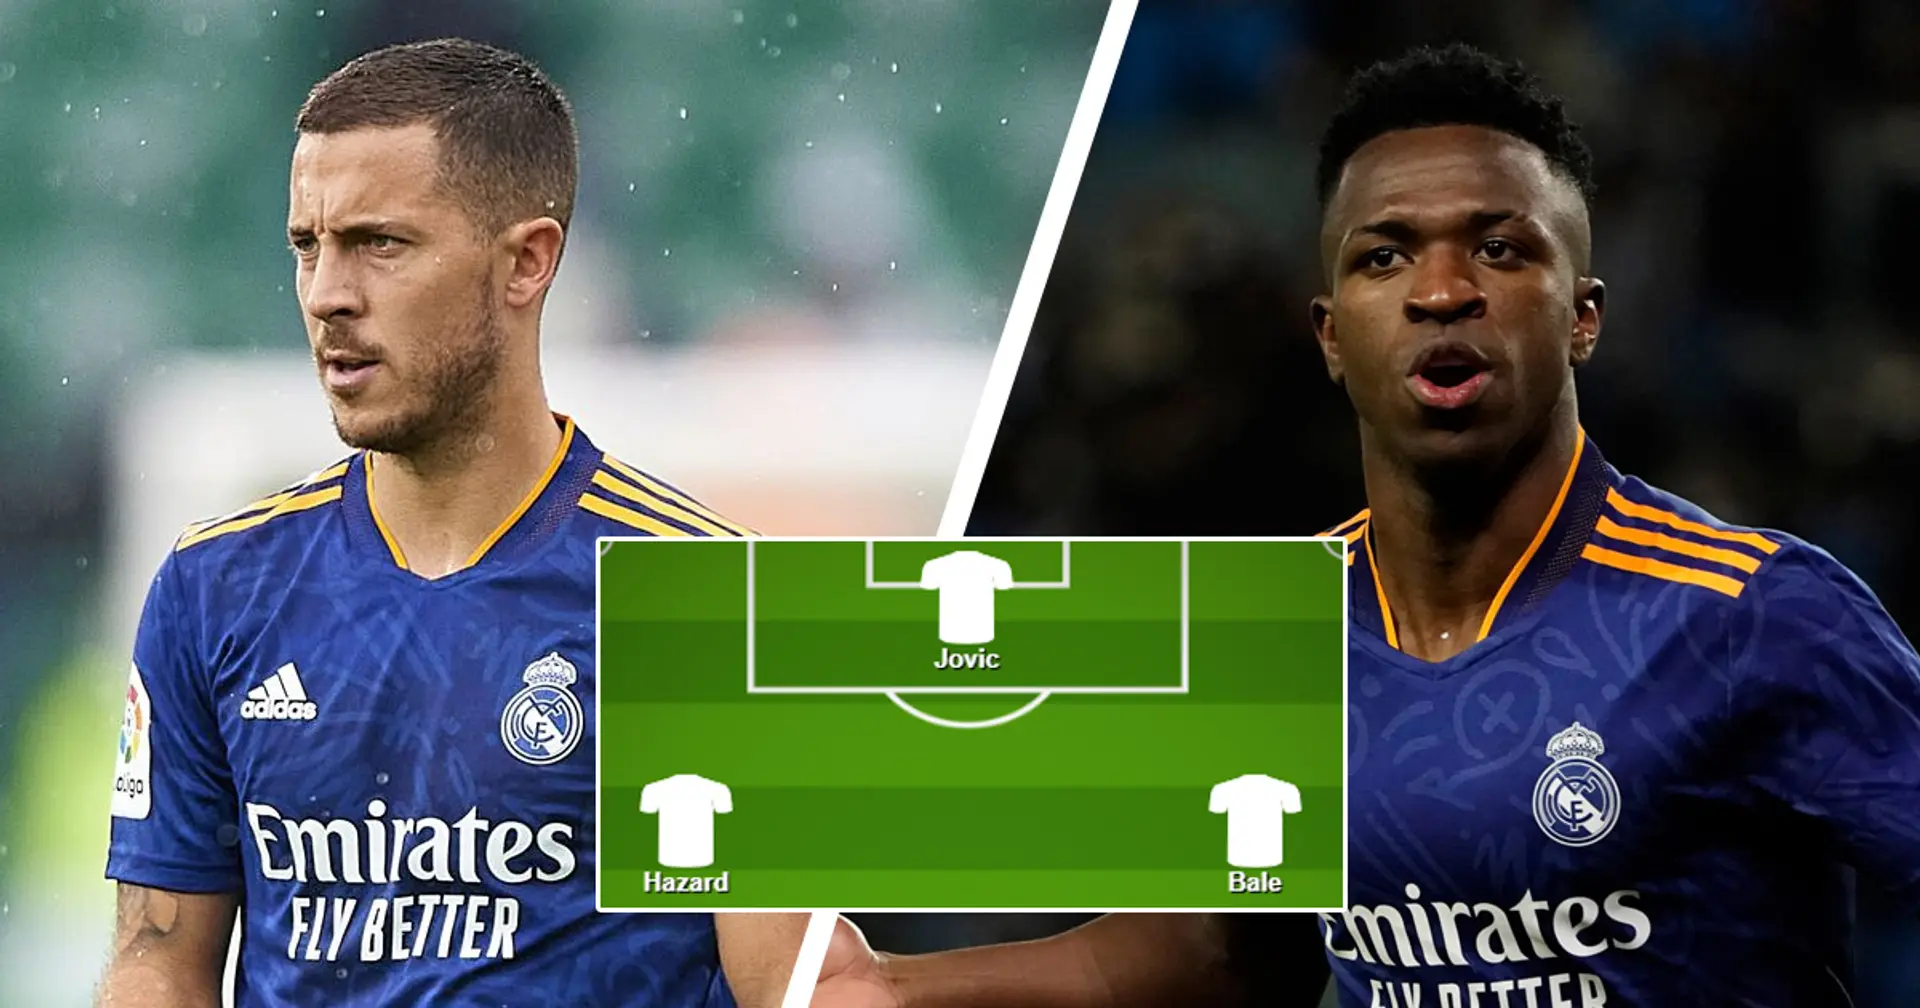 ¿Hazard y Bale o los brasileños? Elige tu XI favorito del Real Madrid para el partido vs Athletic Club